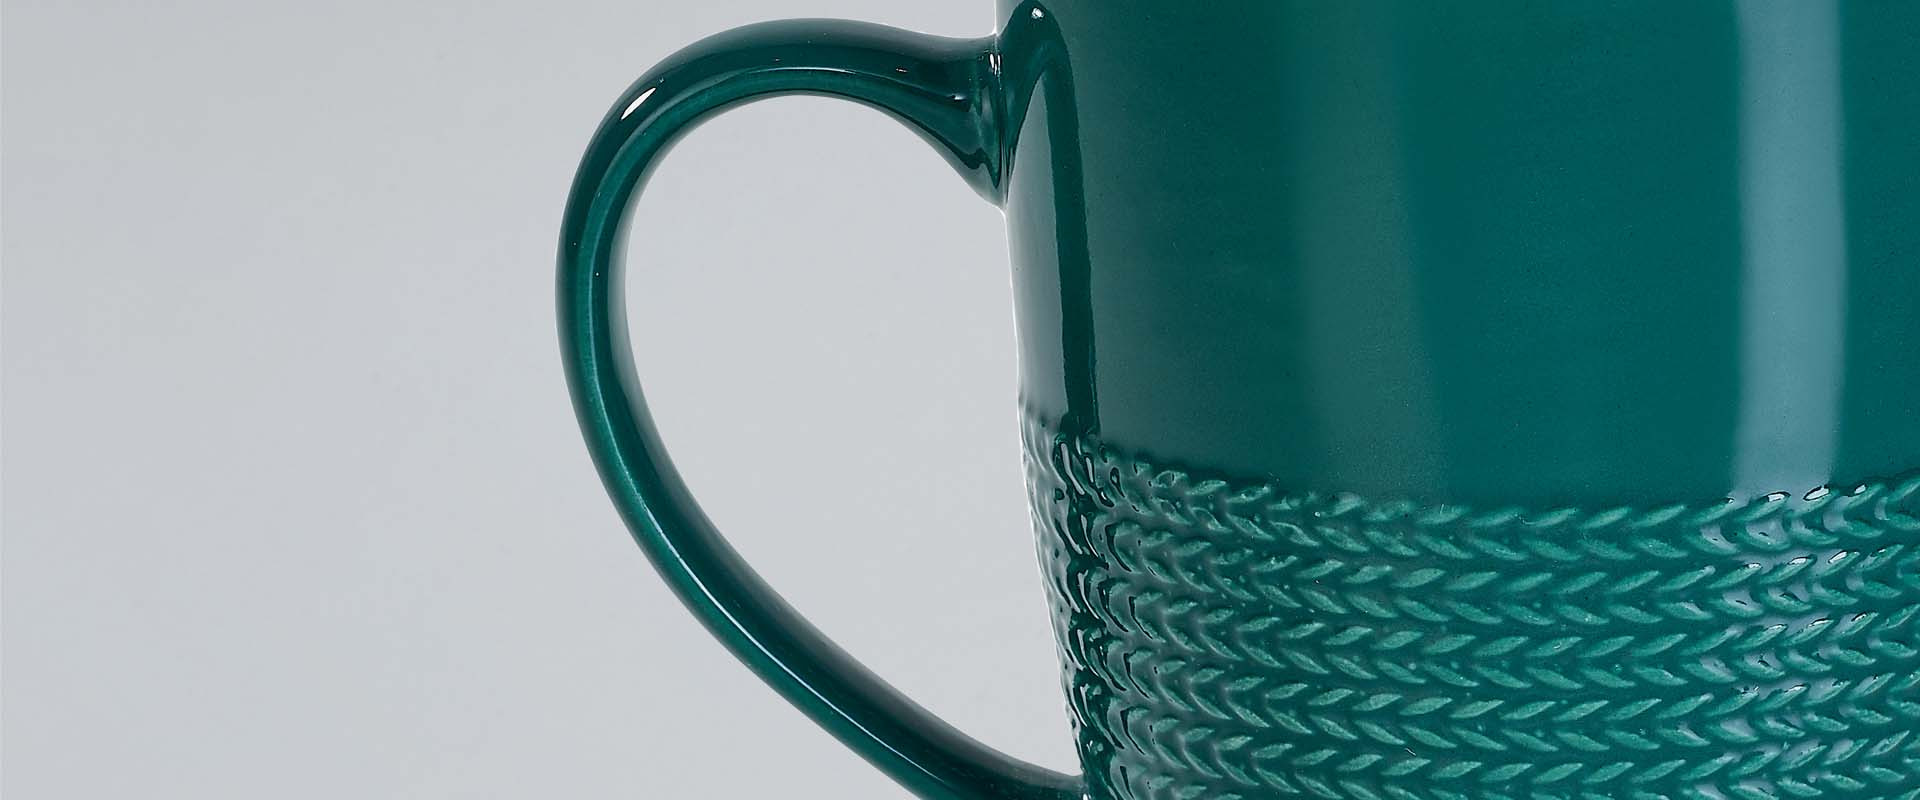 Tea Cups, Coffee Cups and Mugs